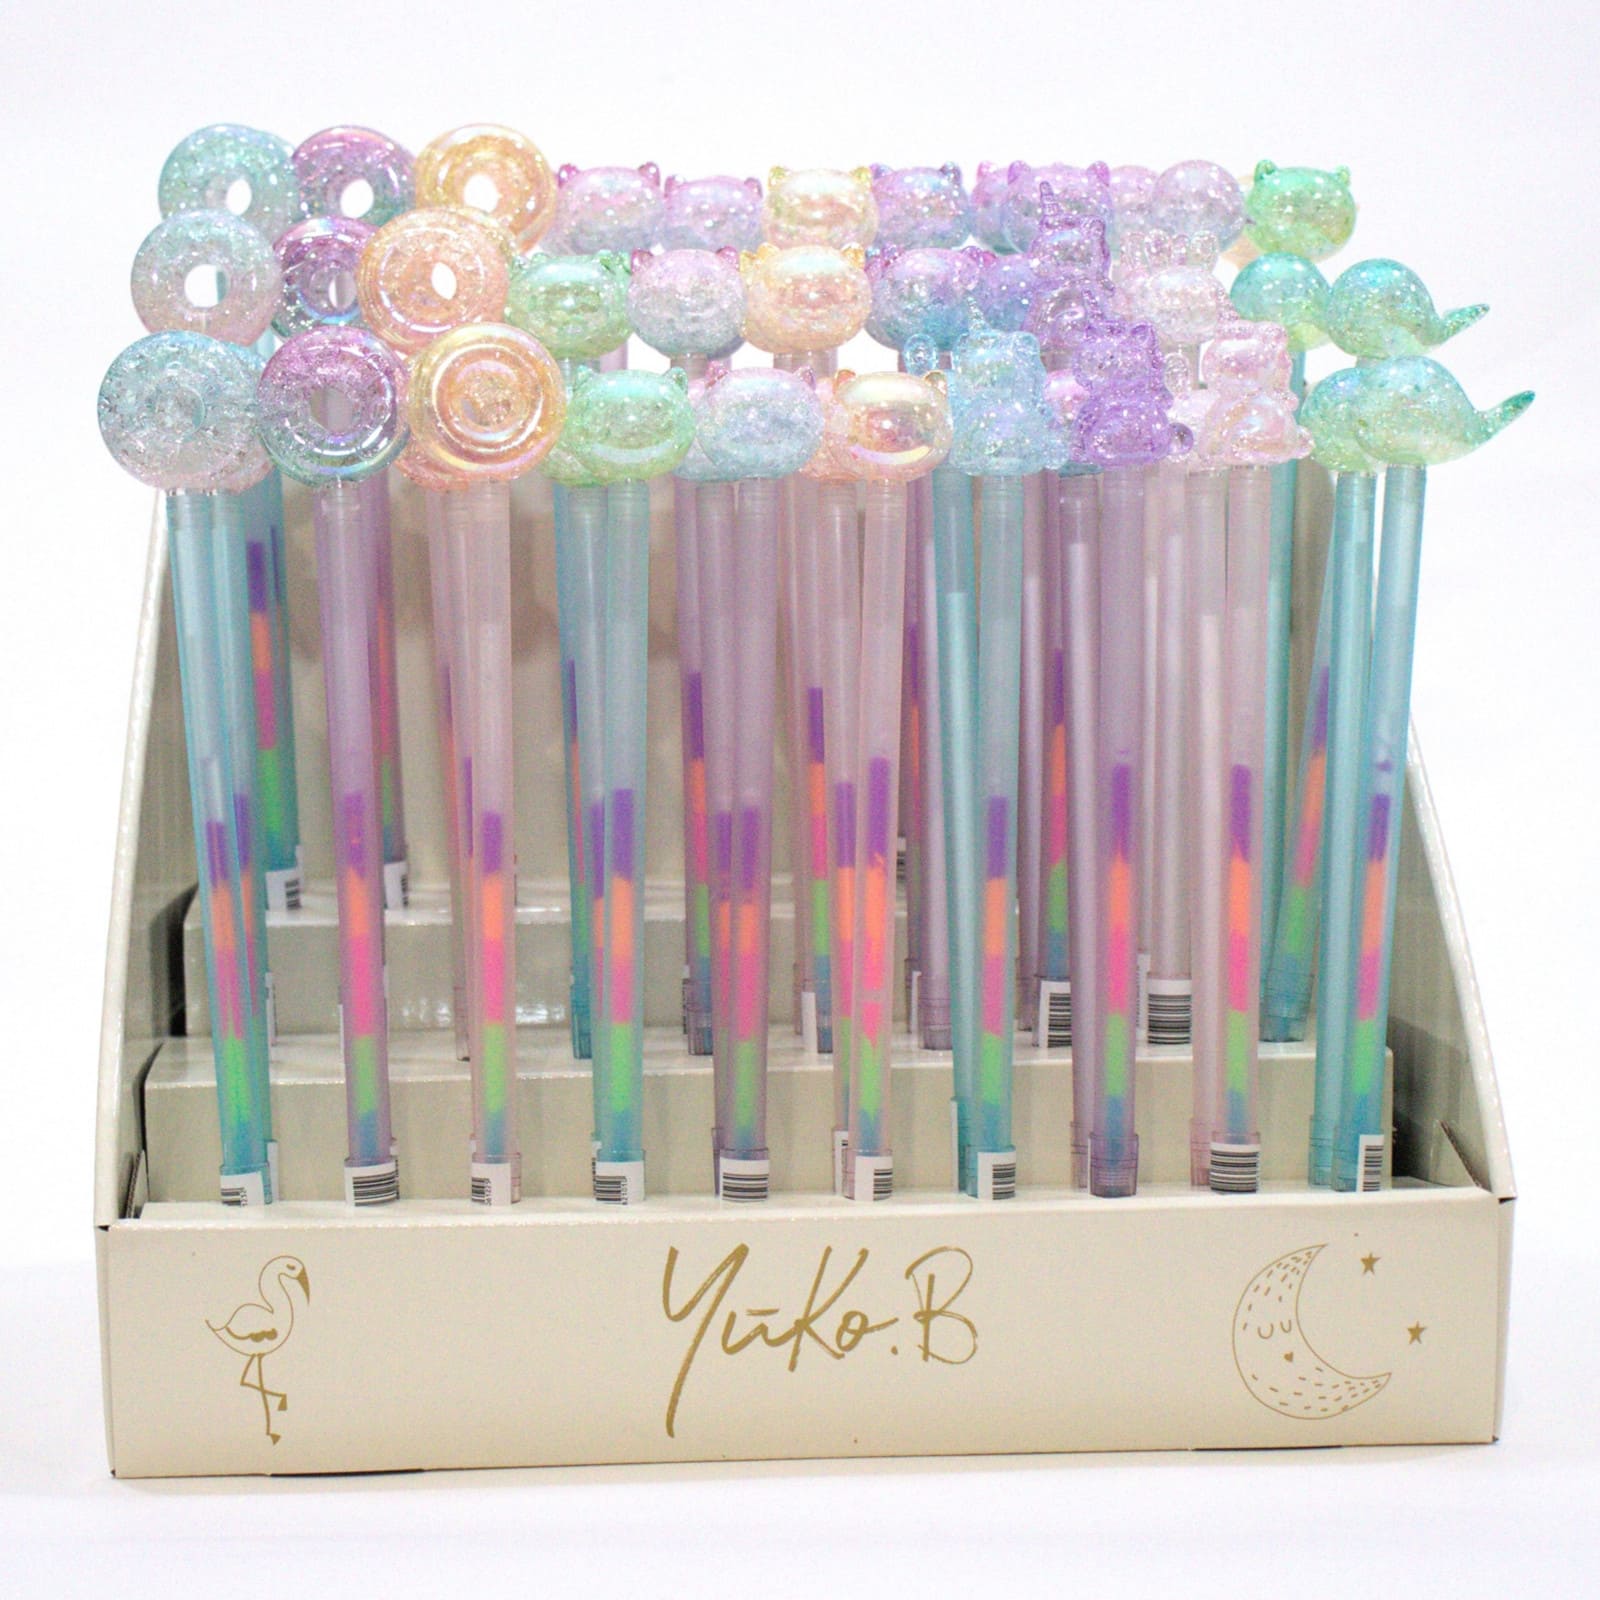 YUKO.B Display mit 60 Stiften Magic Glitter